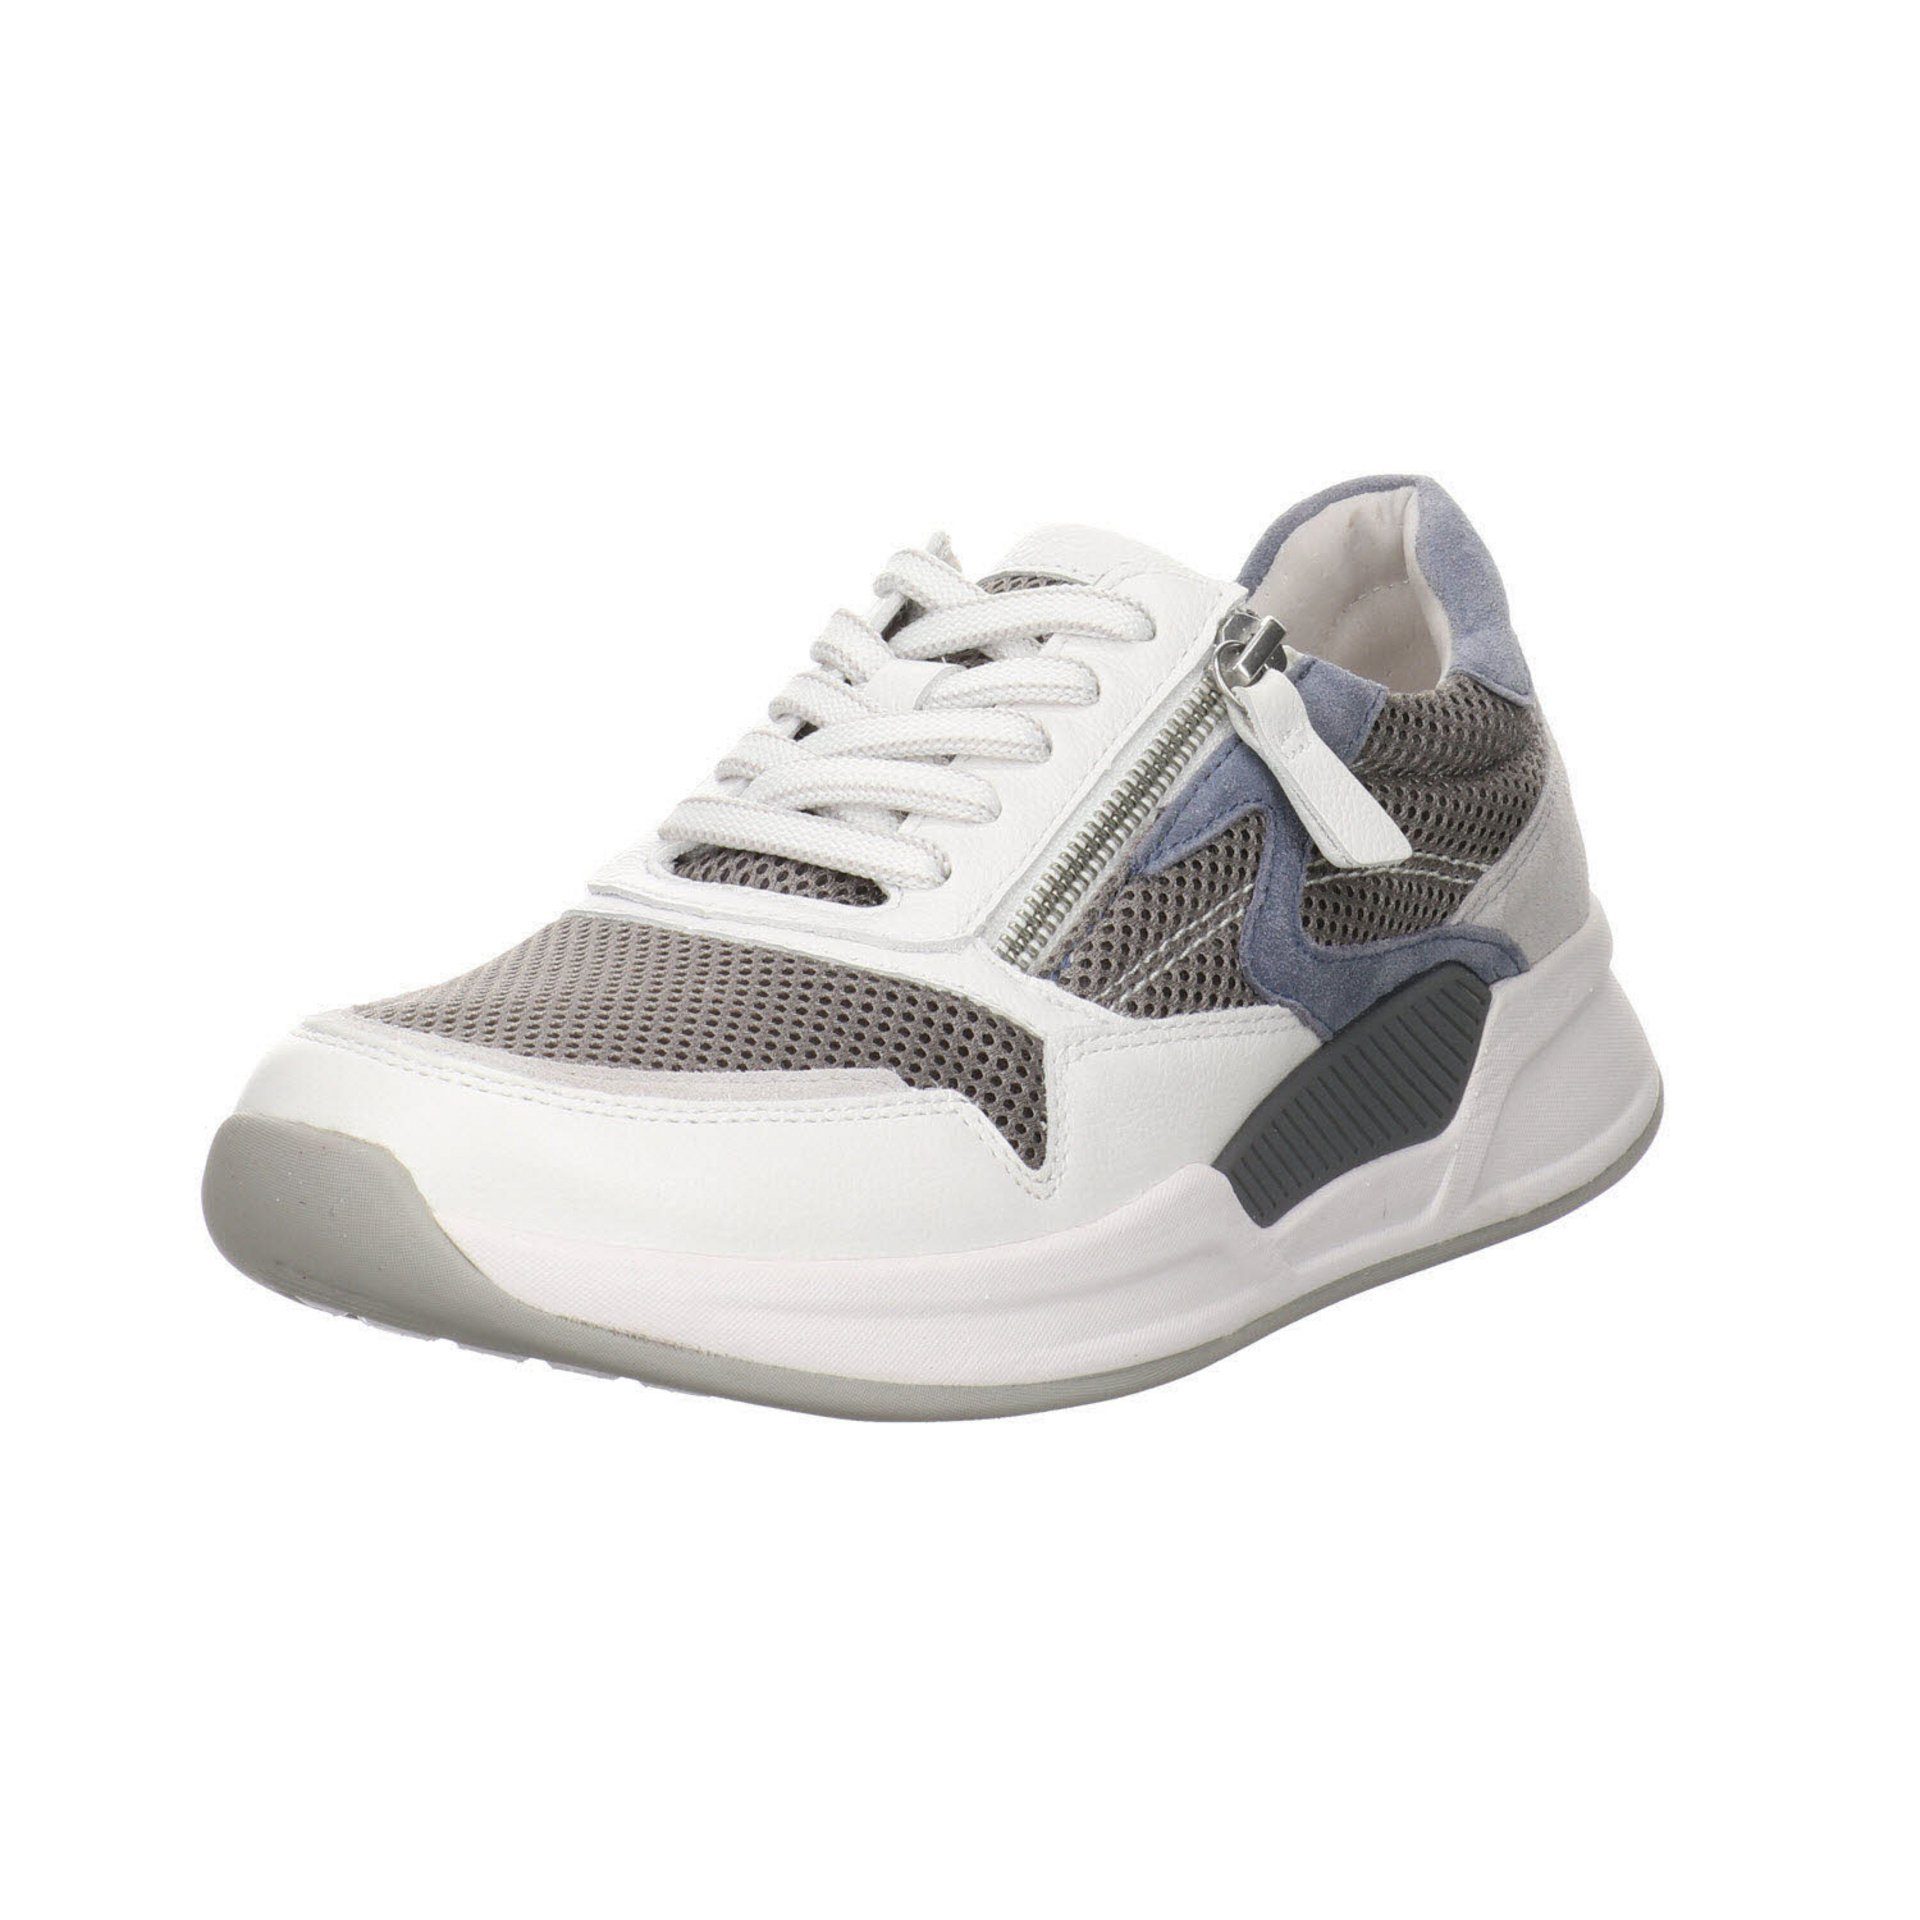 Gabor Damen Sneaker Schuhe Rollingsoft Sneaker Schnürschuh Leder-/Textilkombination grau/weiss/nautic / 41